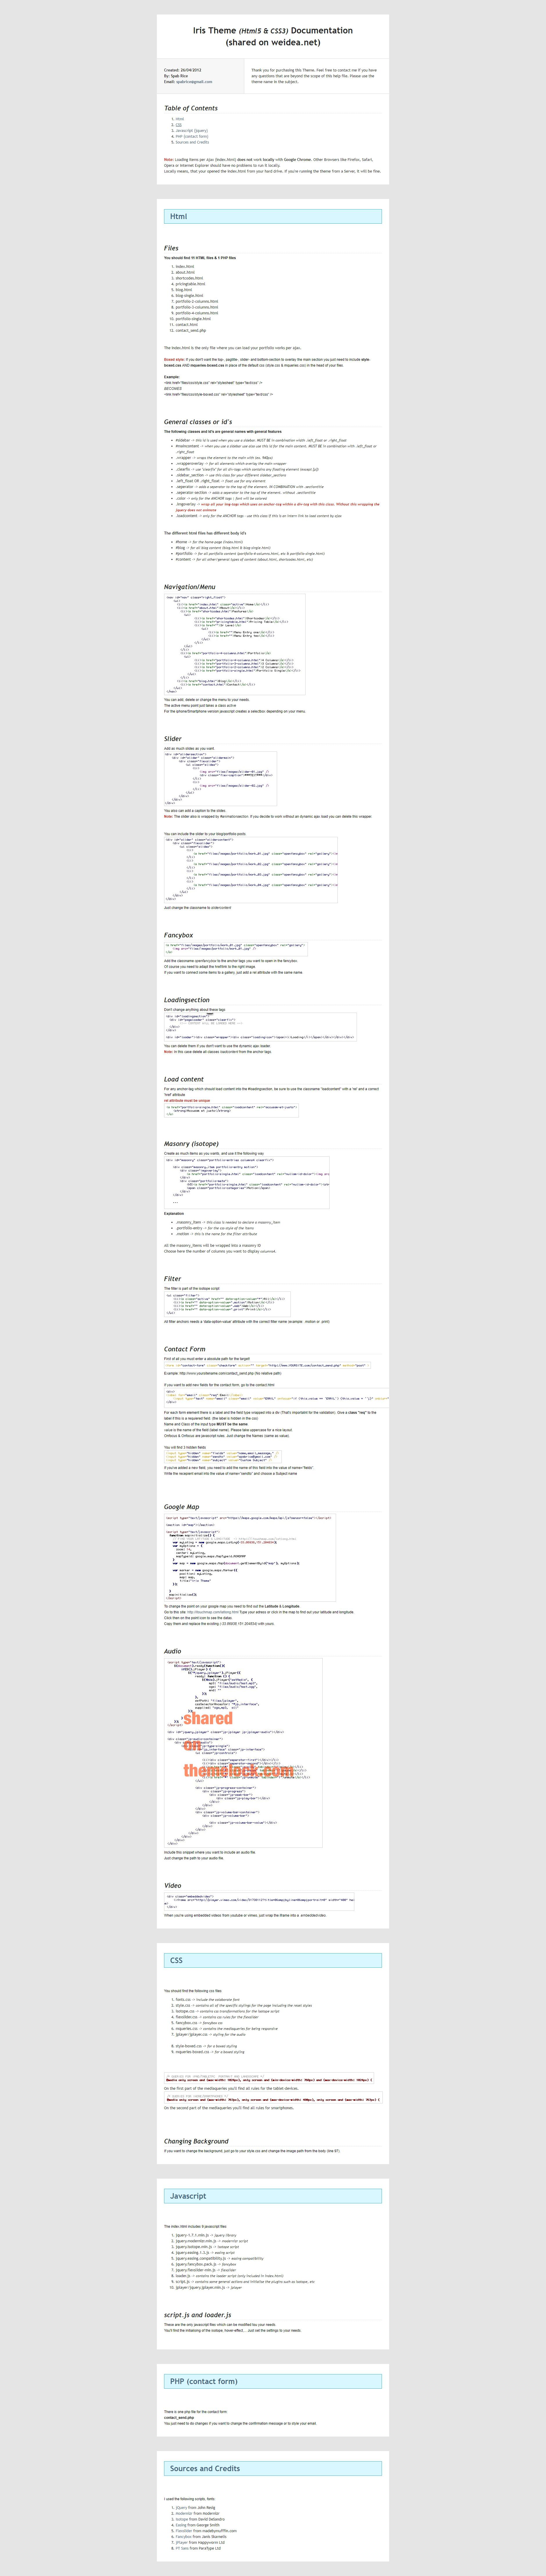 灰色简洁的广告设计类个人网站模板html源码下载